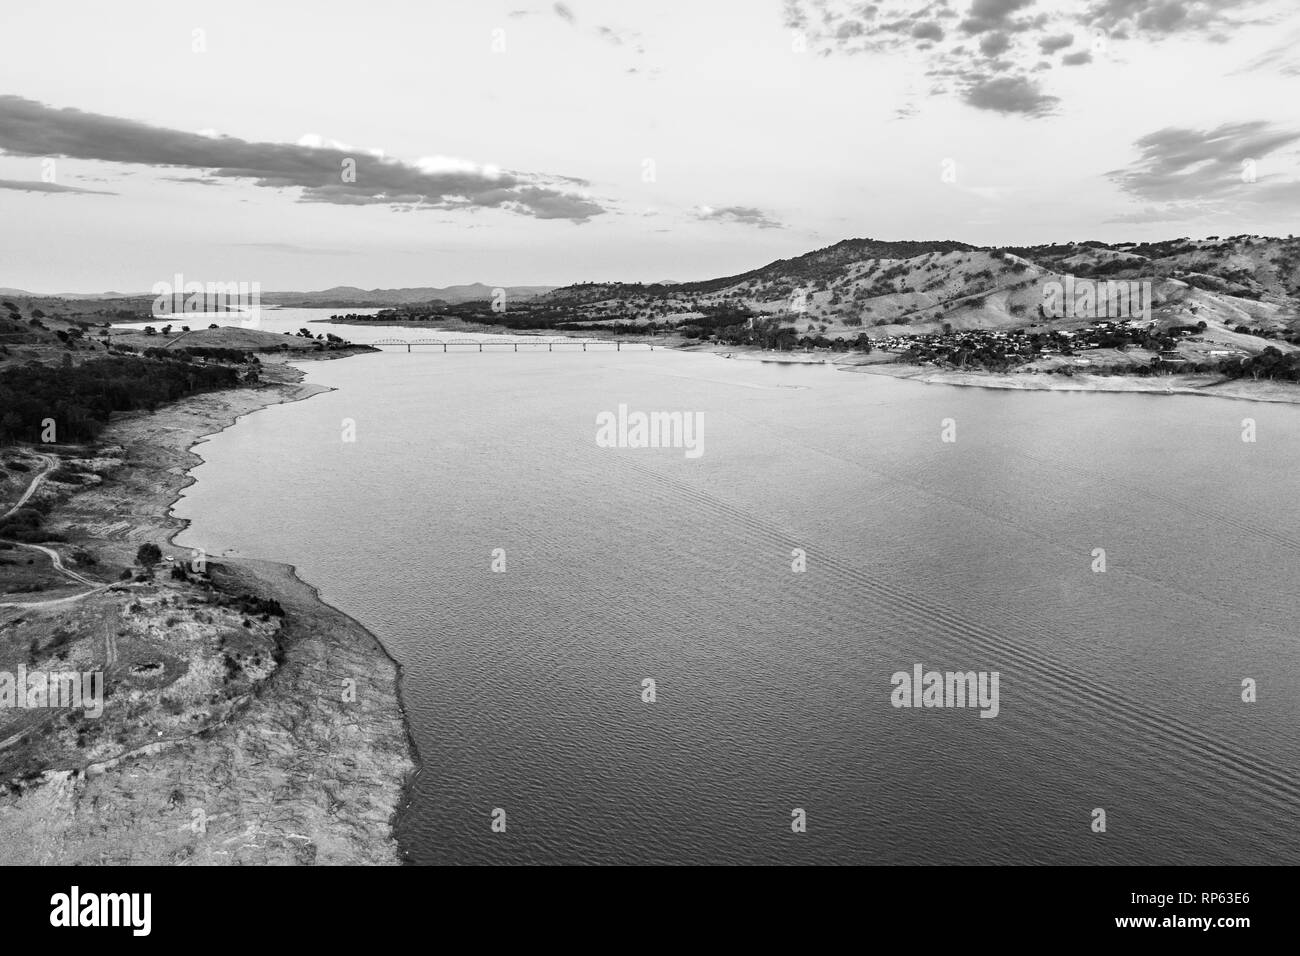 Pont sur le fleuve Murray et du lac Hume en noir et blanc - vue aérienne with copy space Banque D'Images